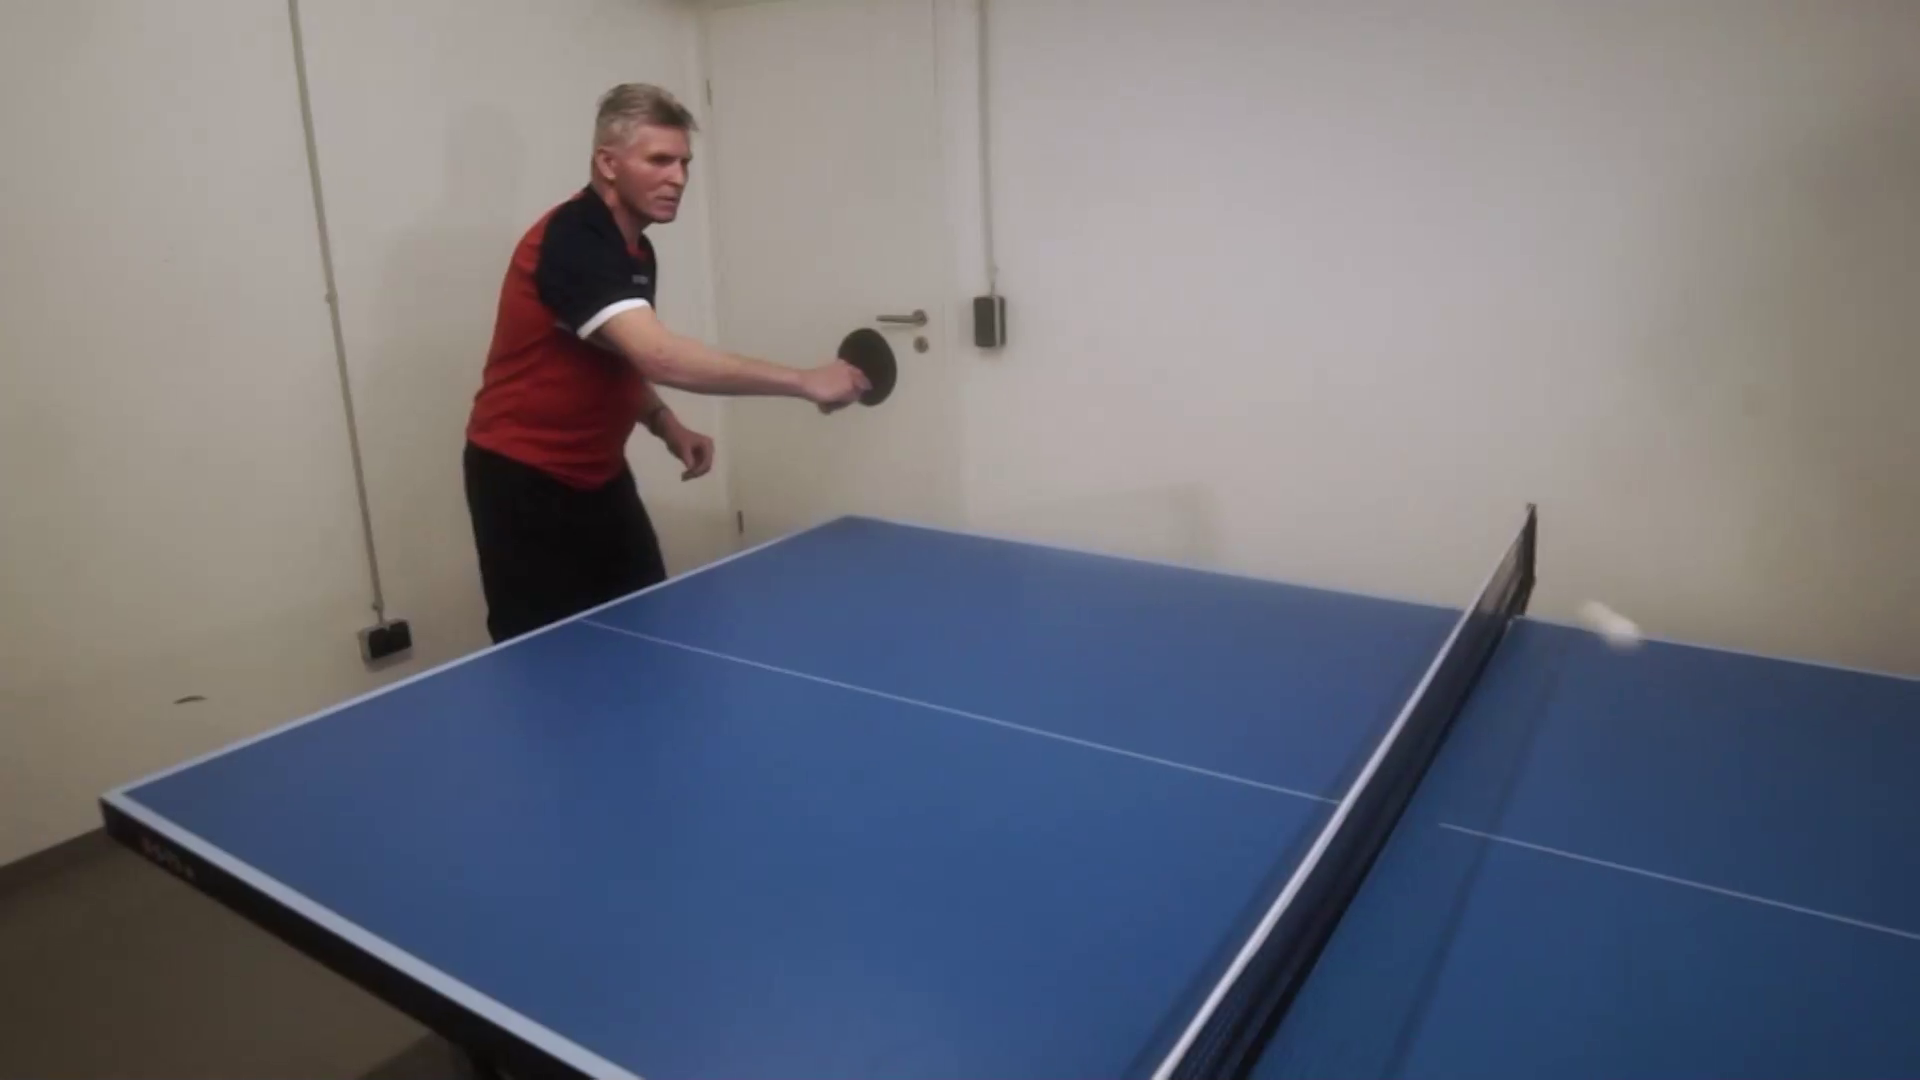 Hubert Hain spielt Ping Pong, um Schmerzen zu lindern